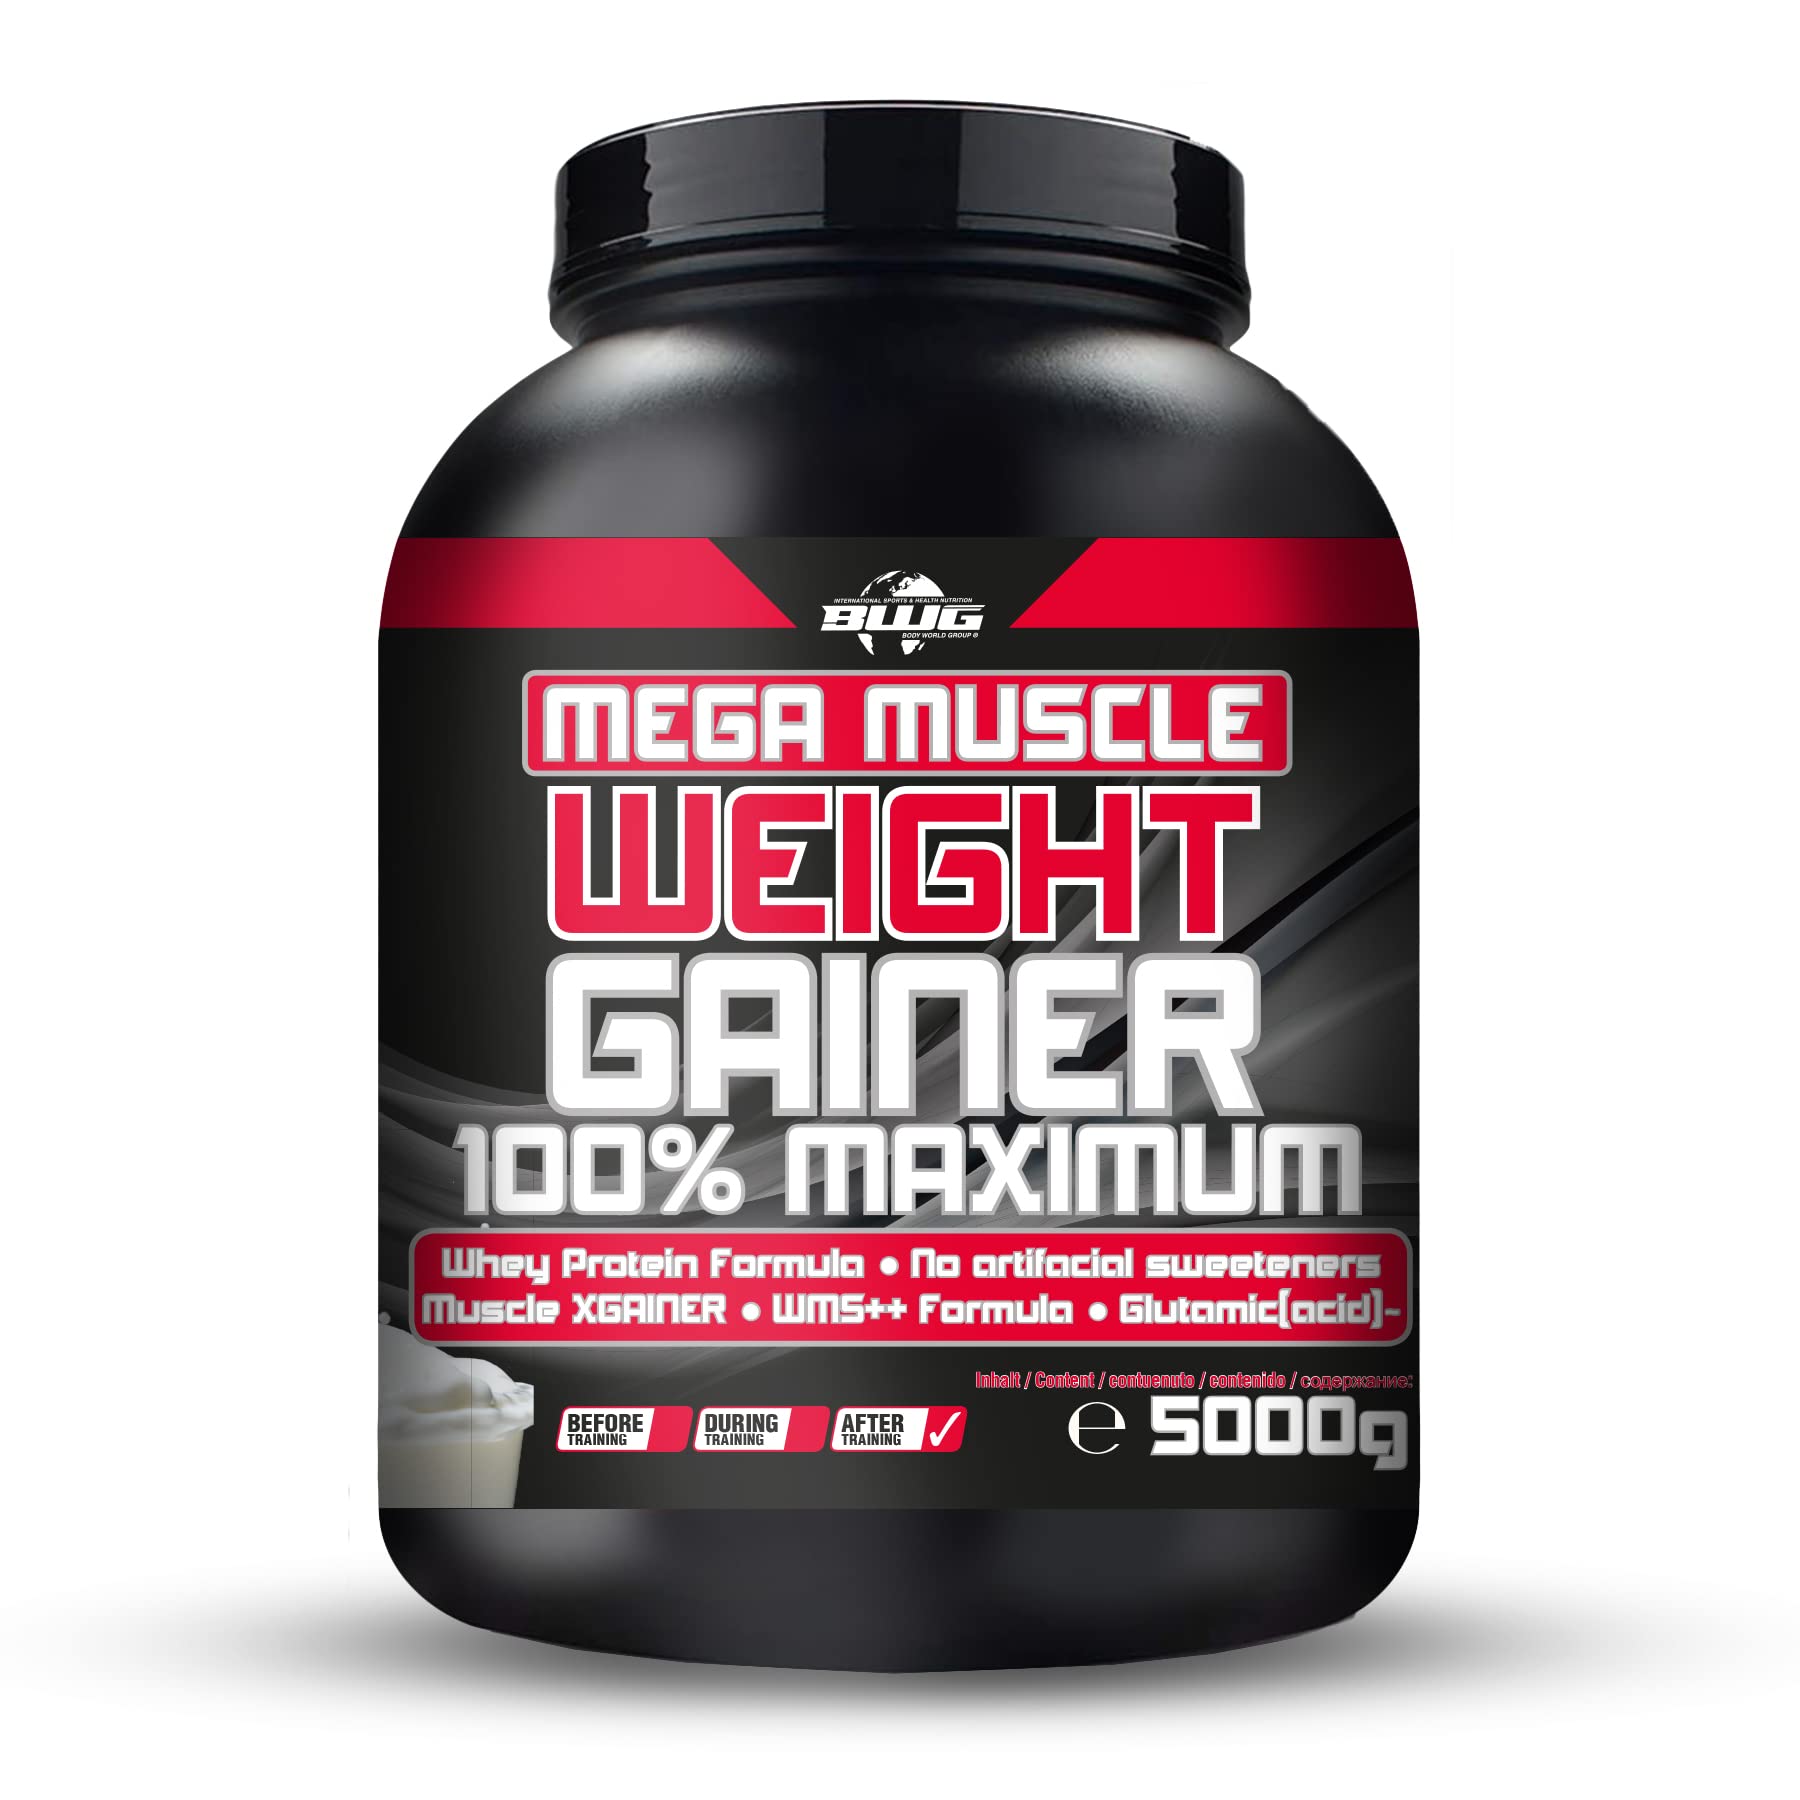 BWG Mega Muscle Weight Gainer 100% Maximum - perfekt für HardGainer und Massephasen – Kraftaufbau - Mega Vanilla - Dose mit Dosierlöffel - (1x 5000g Dose)